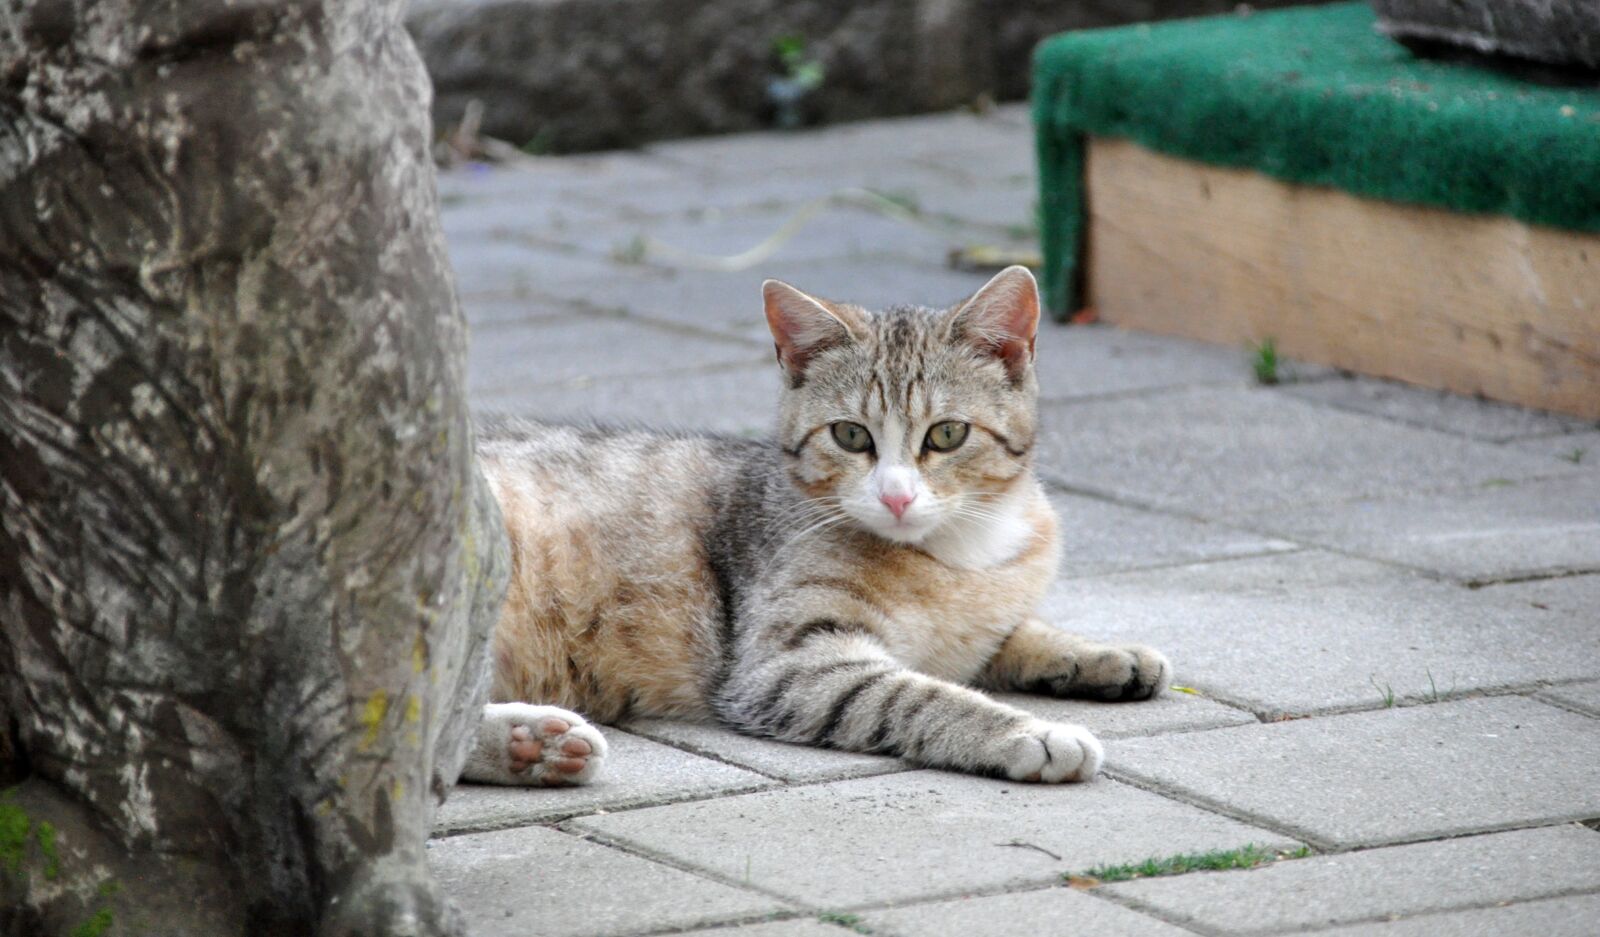 Nikon D90 sample photo. Pet, cat, animal photography